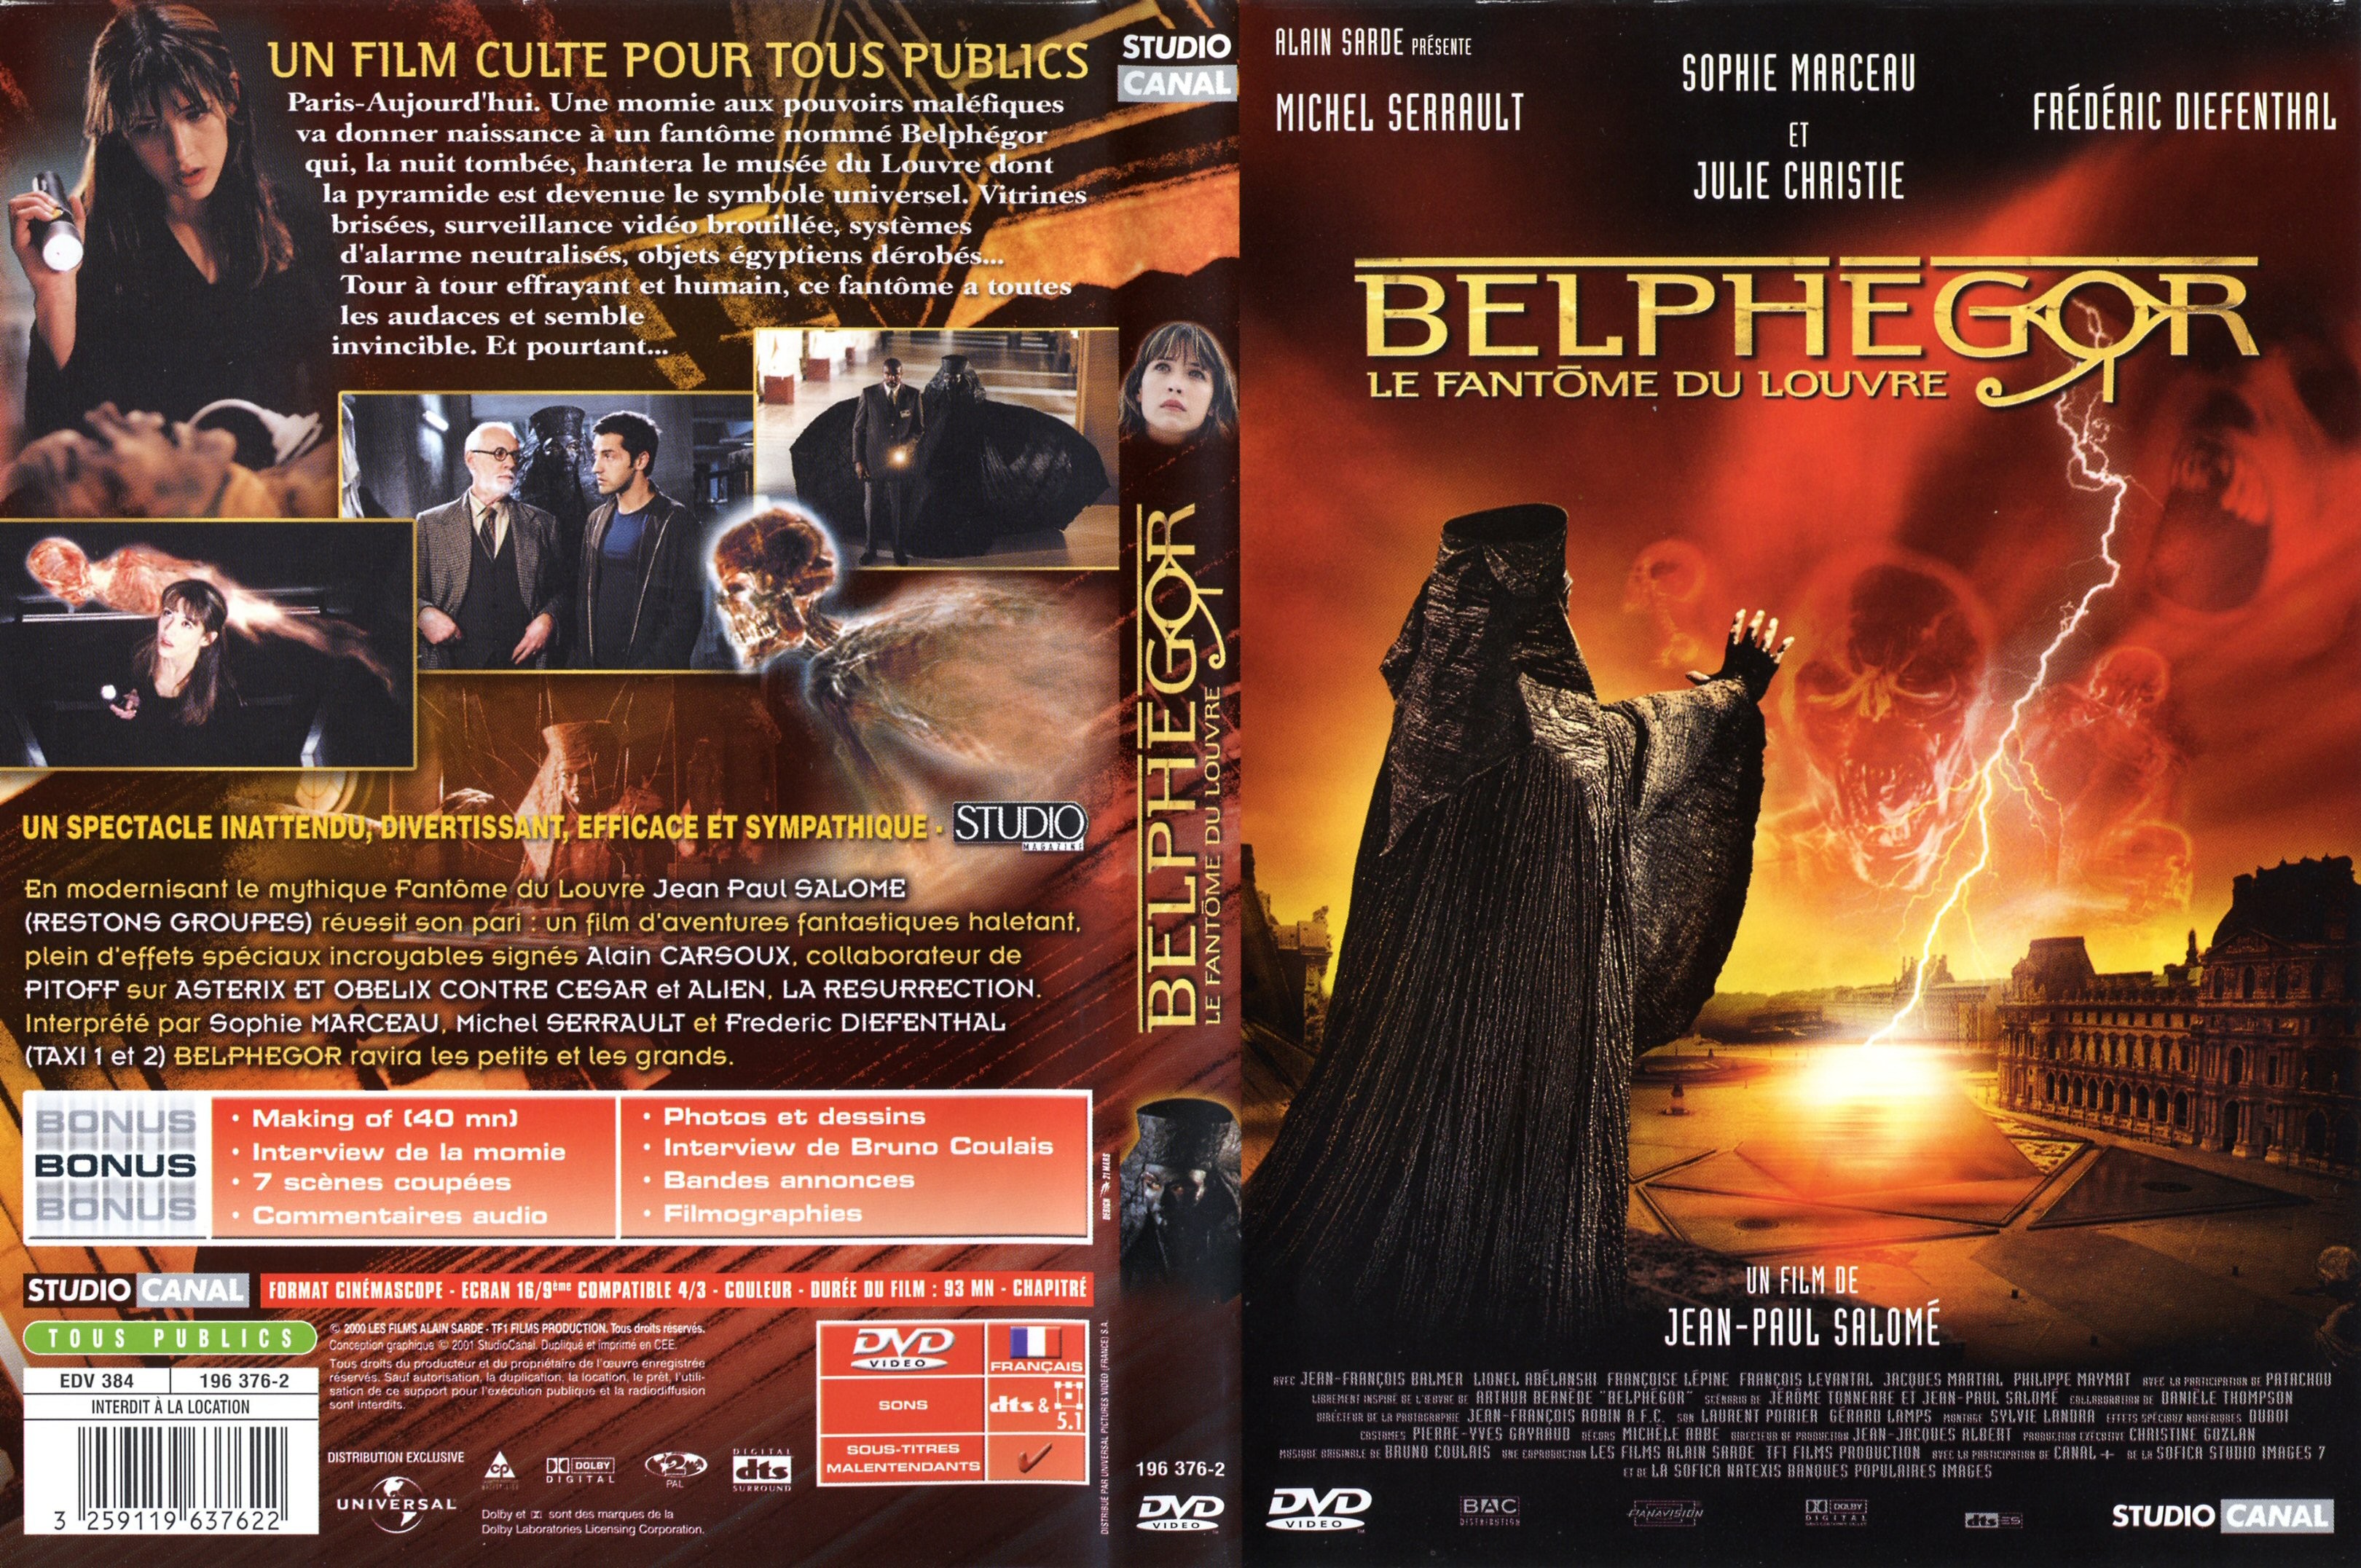 Jaquette DVD Belphegor le fantome du louvre